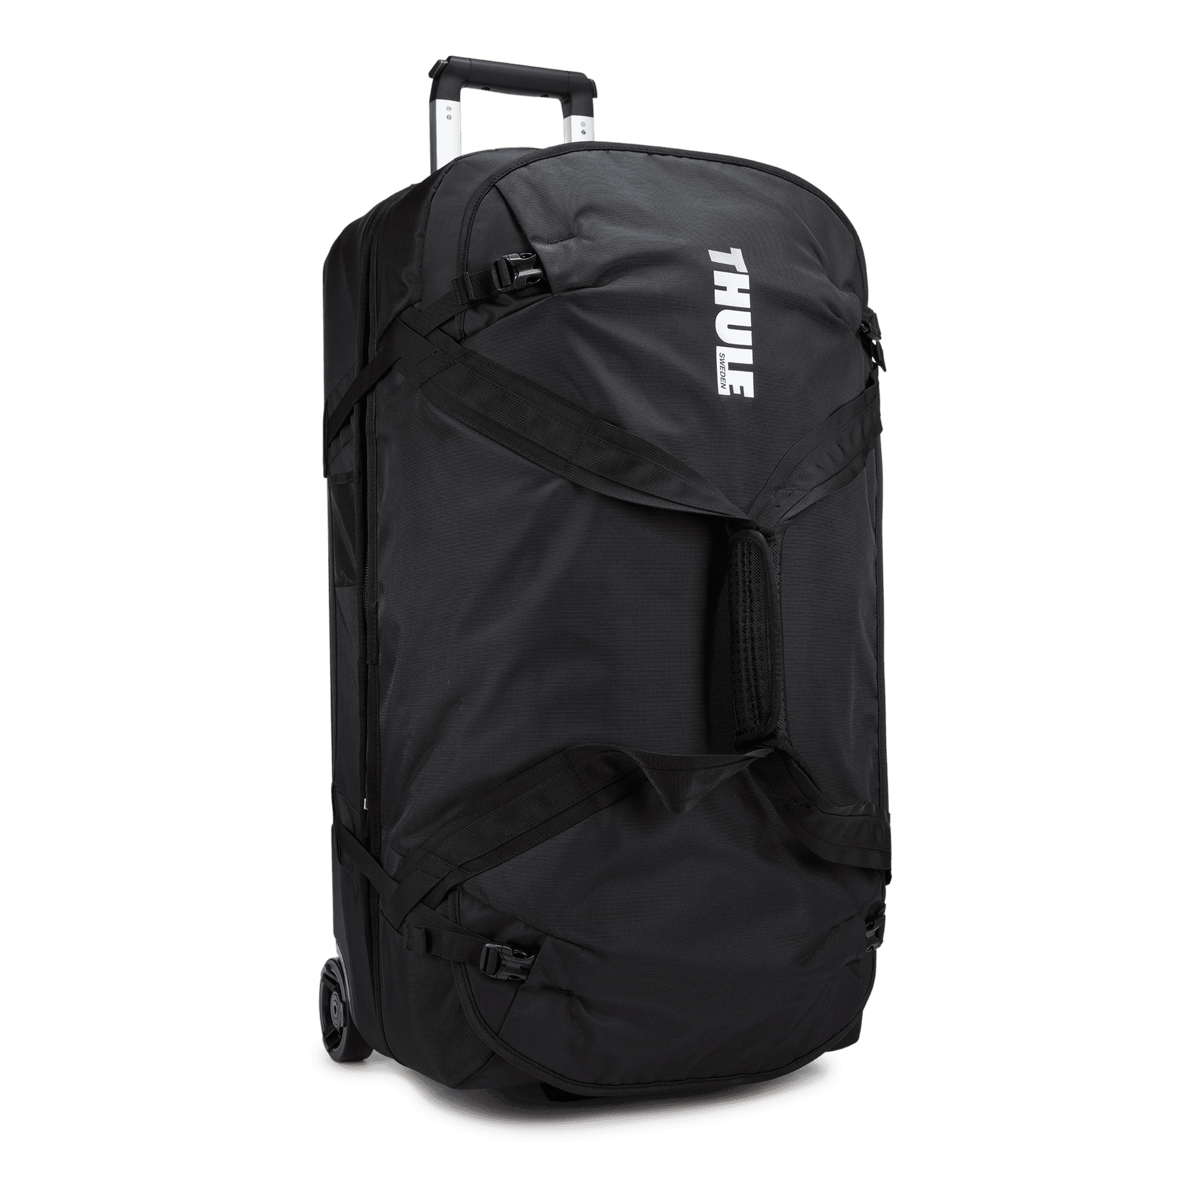 Thule Subterra wheeled duffel bag 75cm/30" black